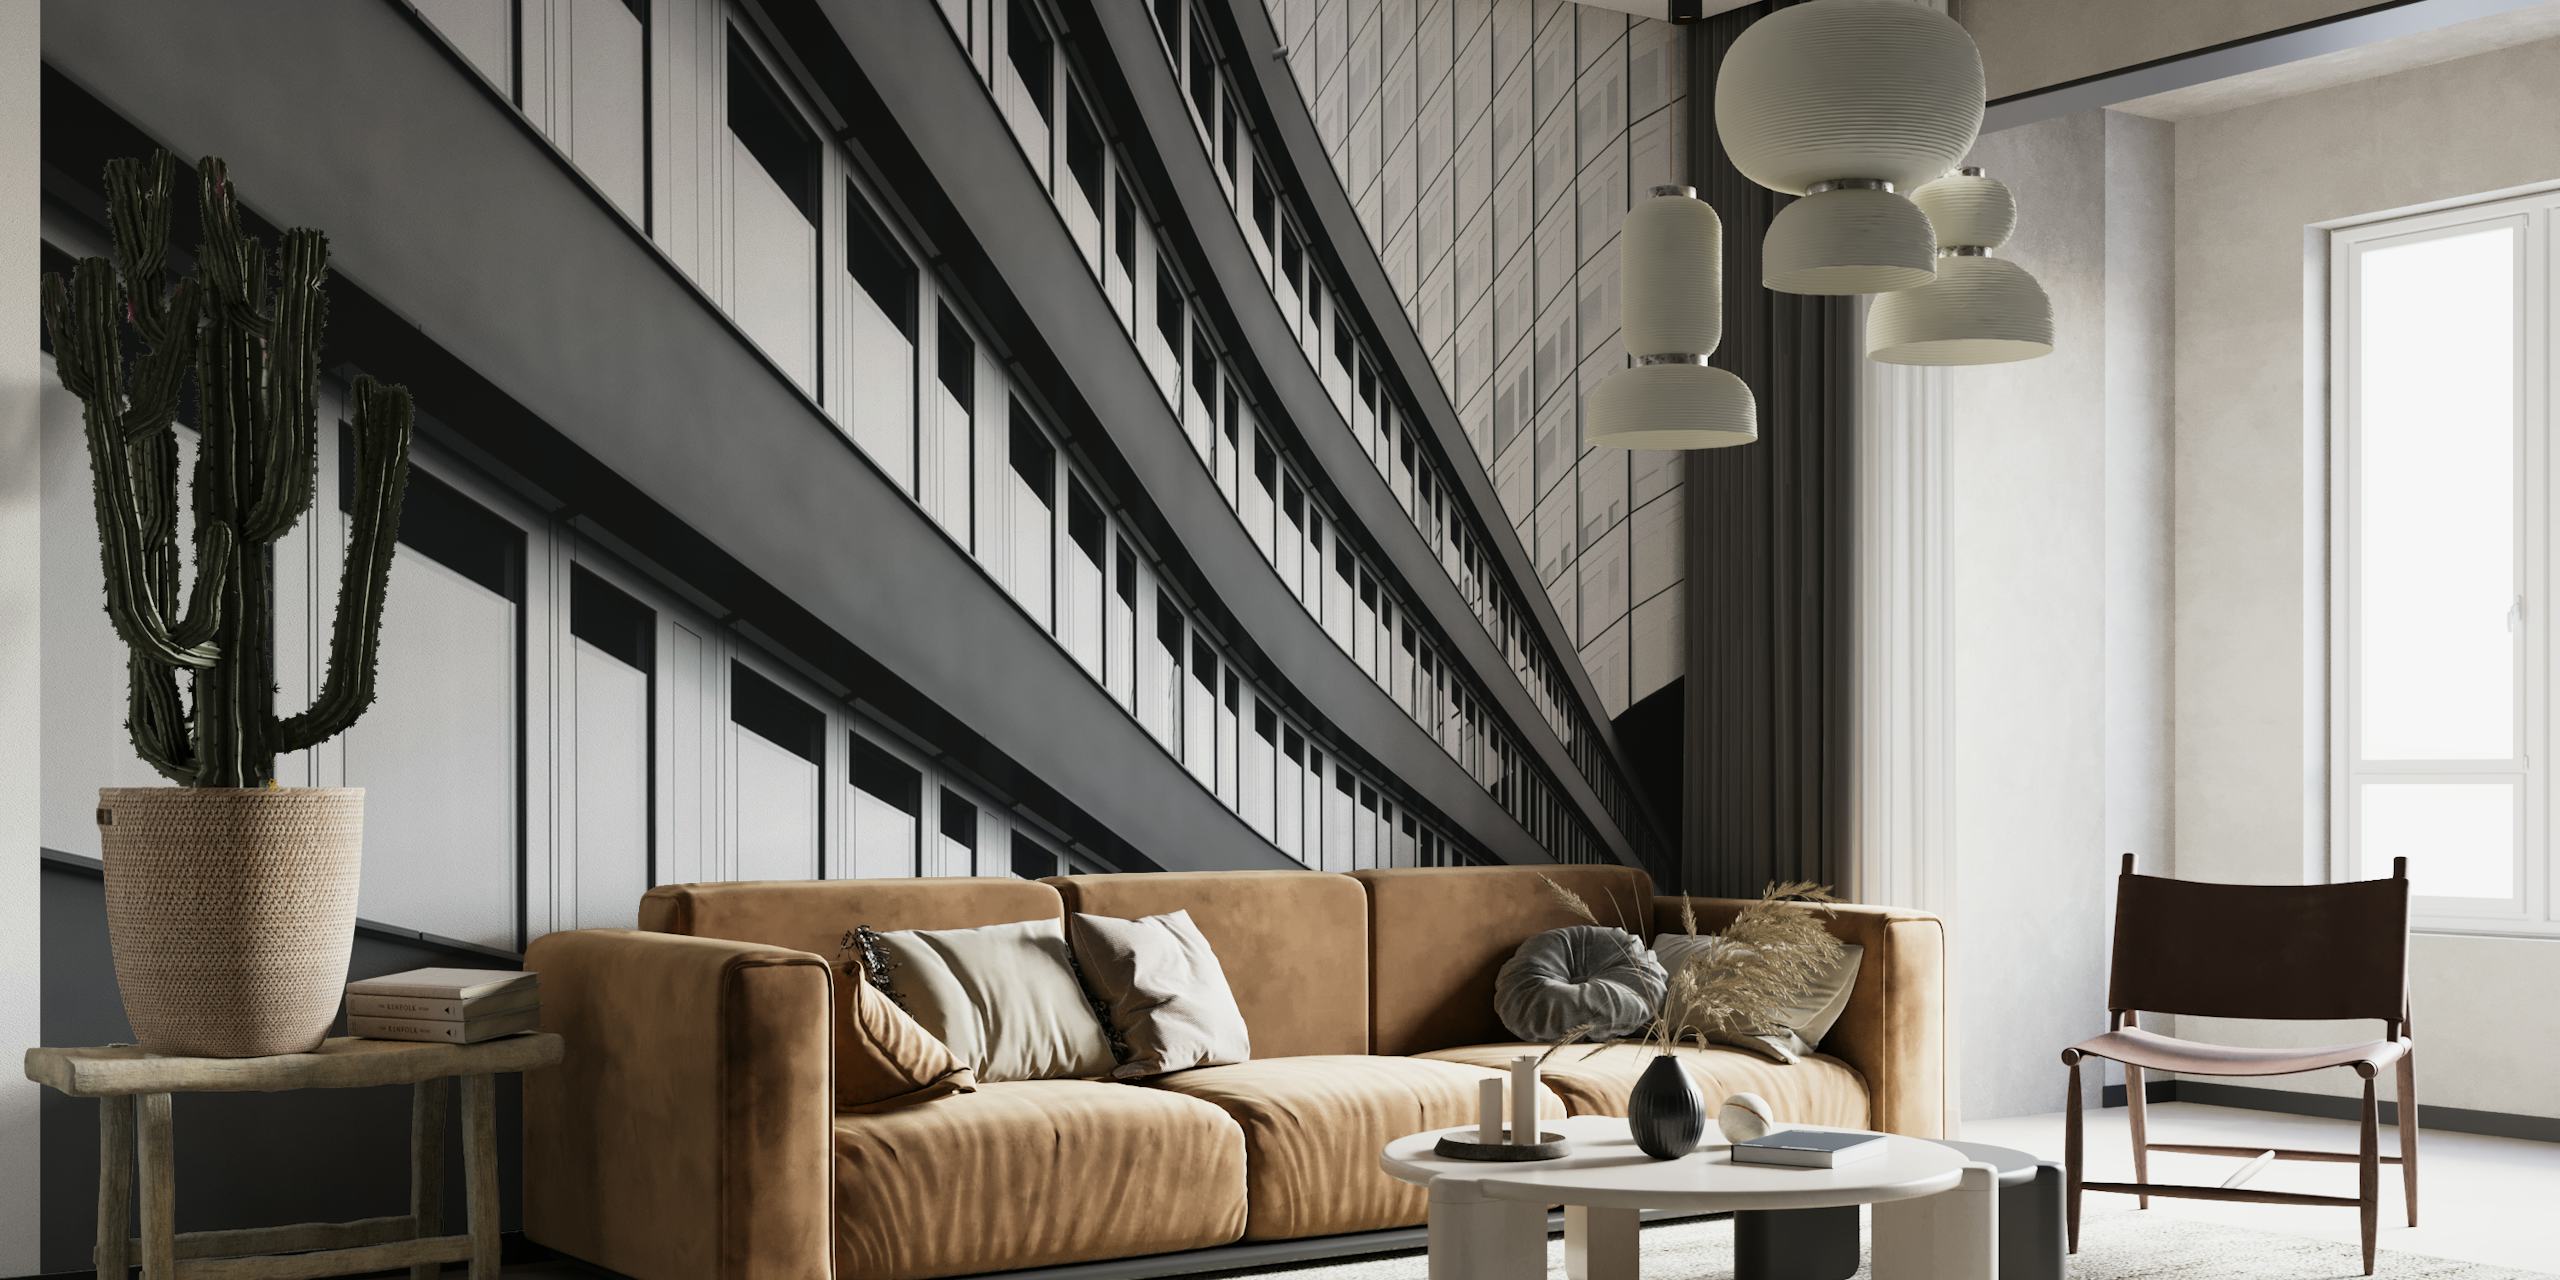 Černobílá fototapeta s moderními architektonickými liniemi budovy pracoviště